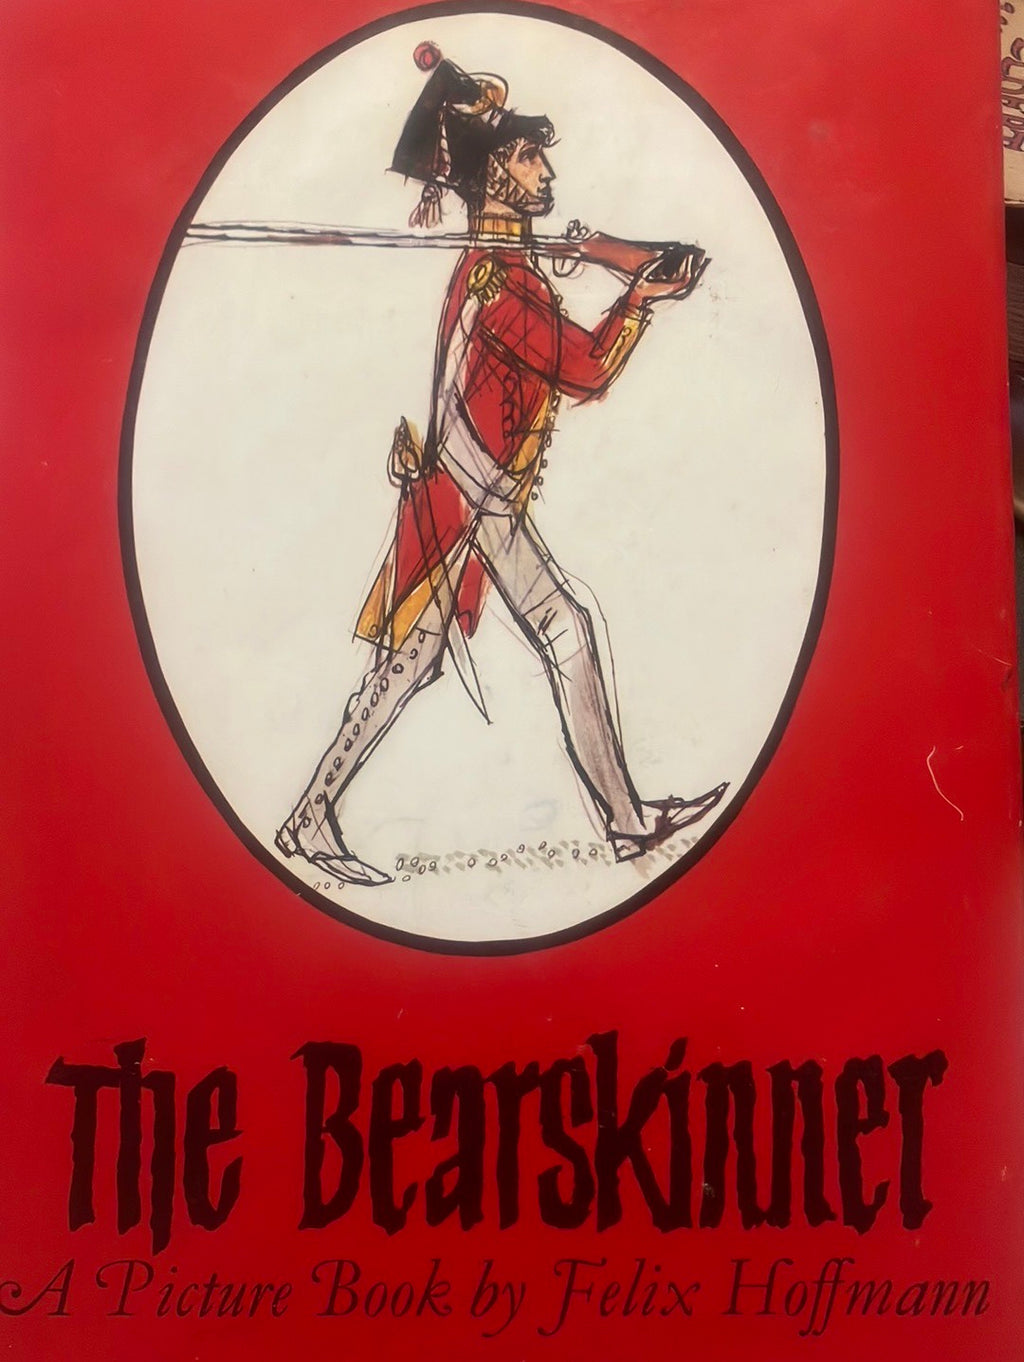 The bearskinner